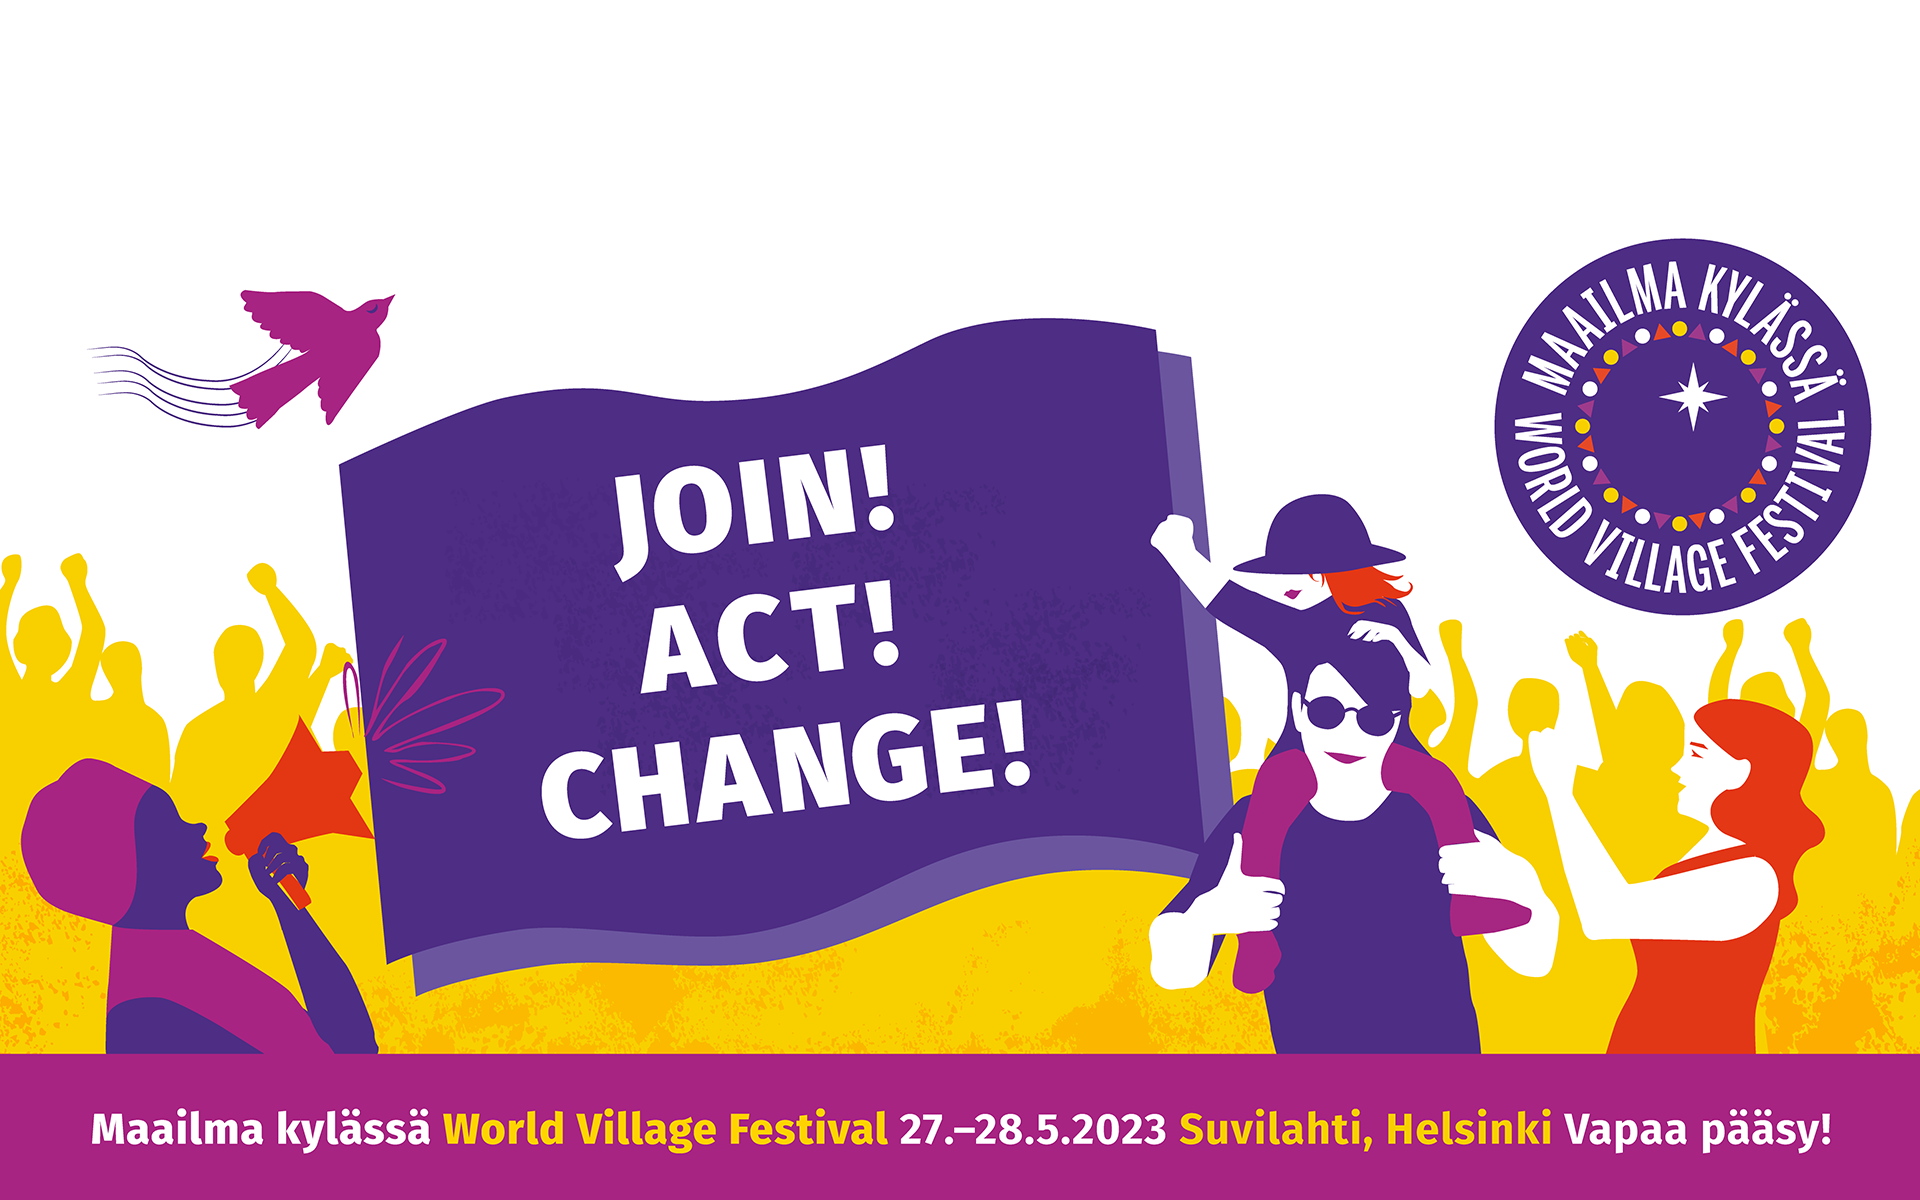 Maailma kylässä -festivaalin mainosbanneri, jossa teksti Join! Act! Change!